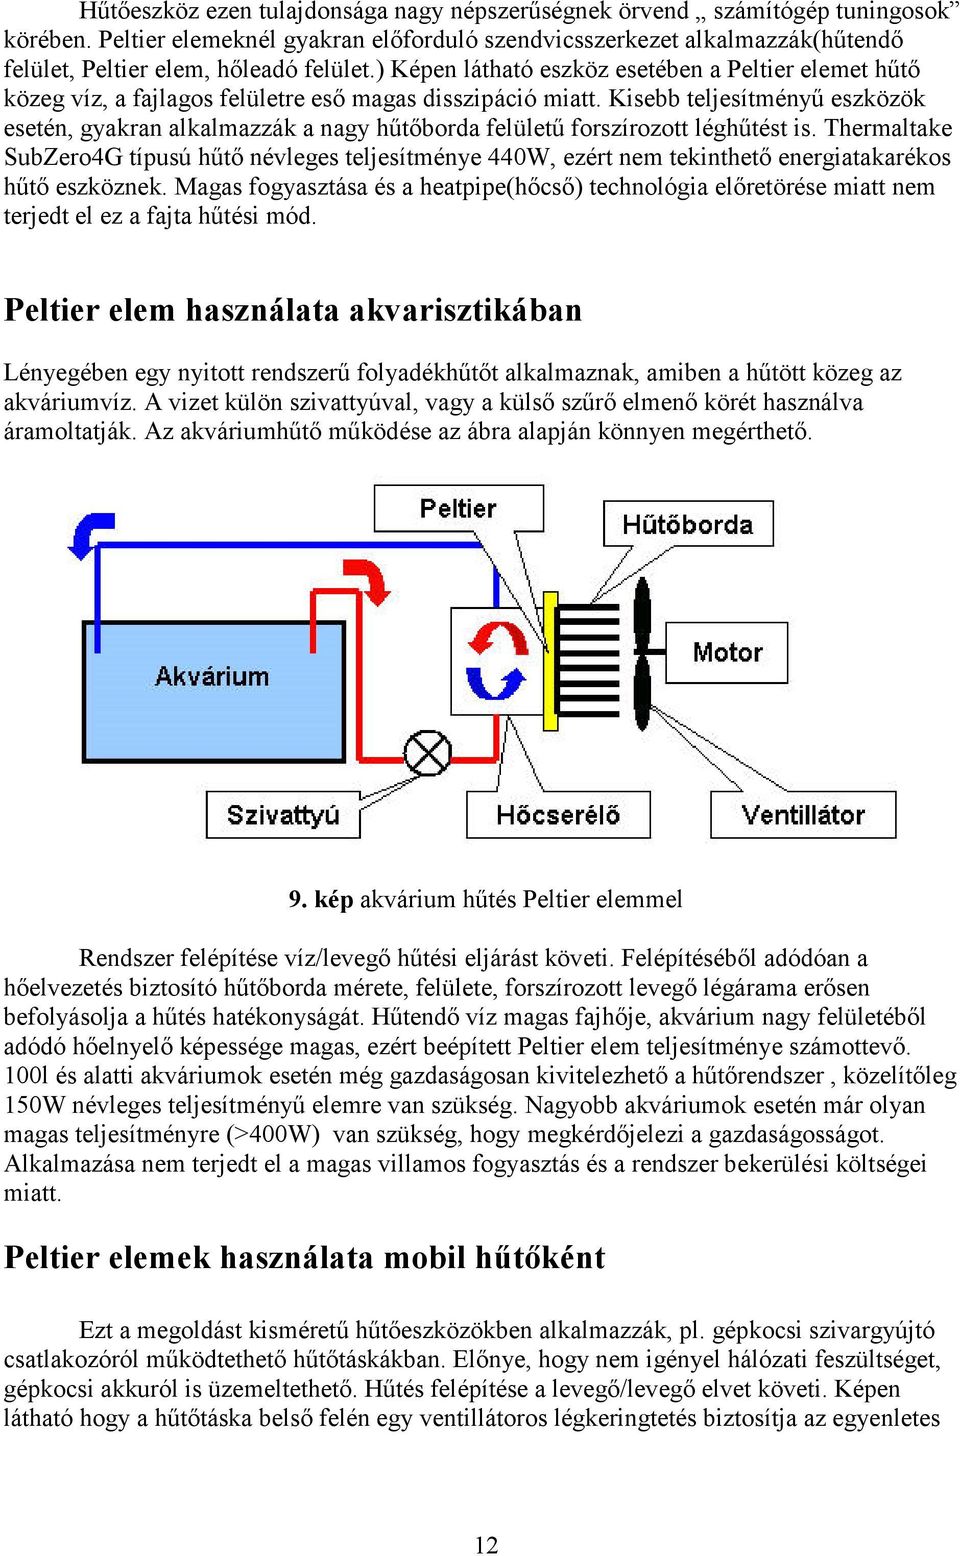 ) Képen látható eszköz esetében a Peltier elemet hőtı közeg víz, a fajlagos felületre esı magas disszipáció miatt.